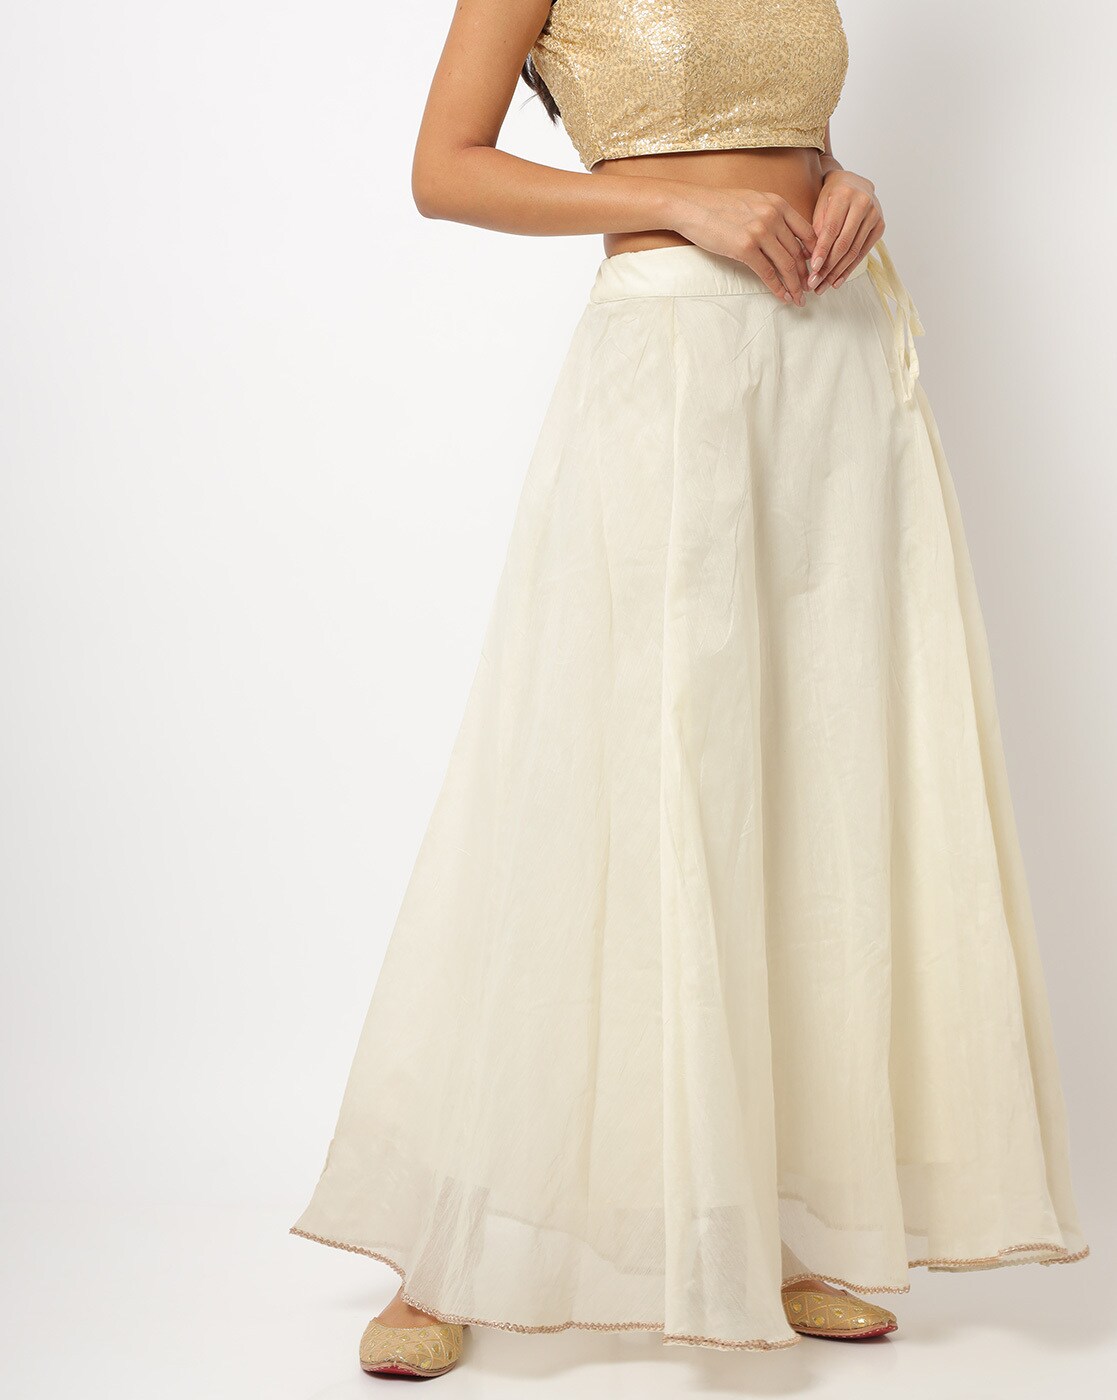 Golden Printed Kota Silk Long Skirt in Off White : BNJ647